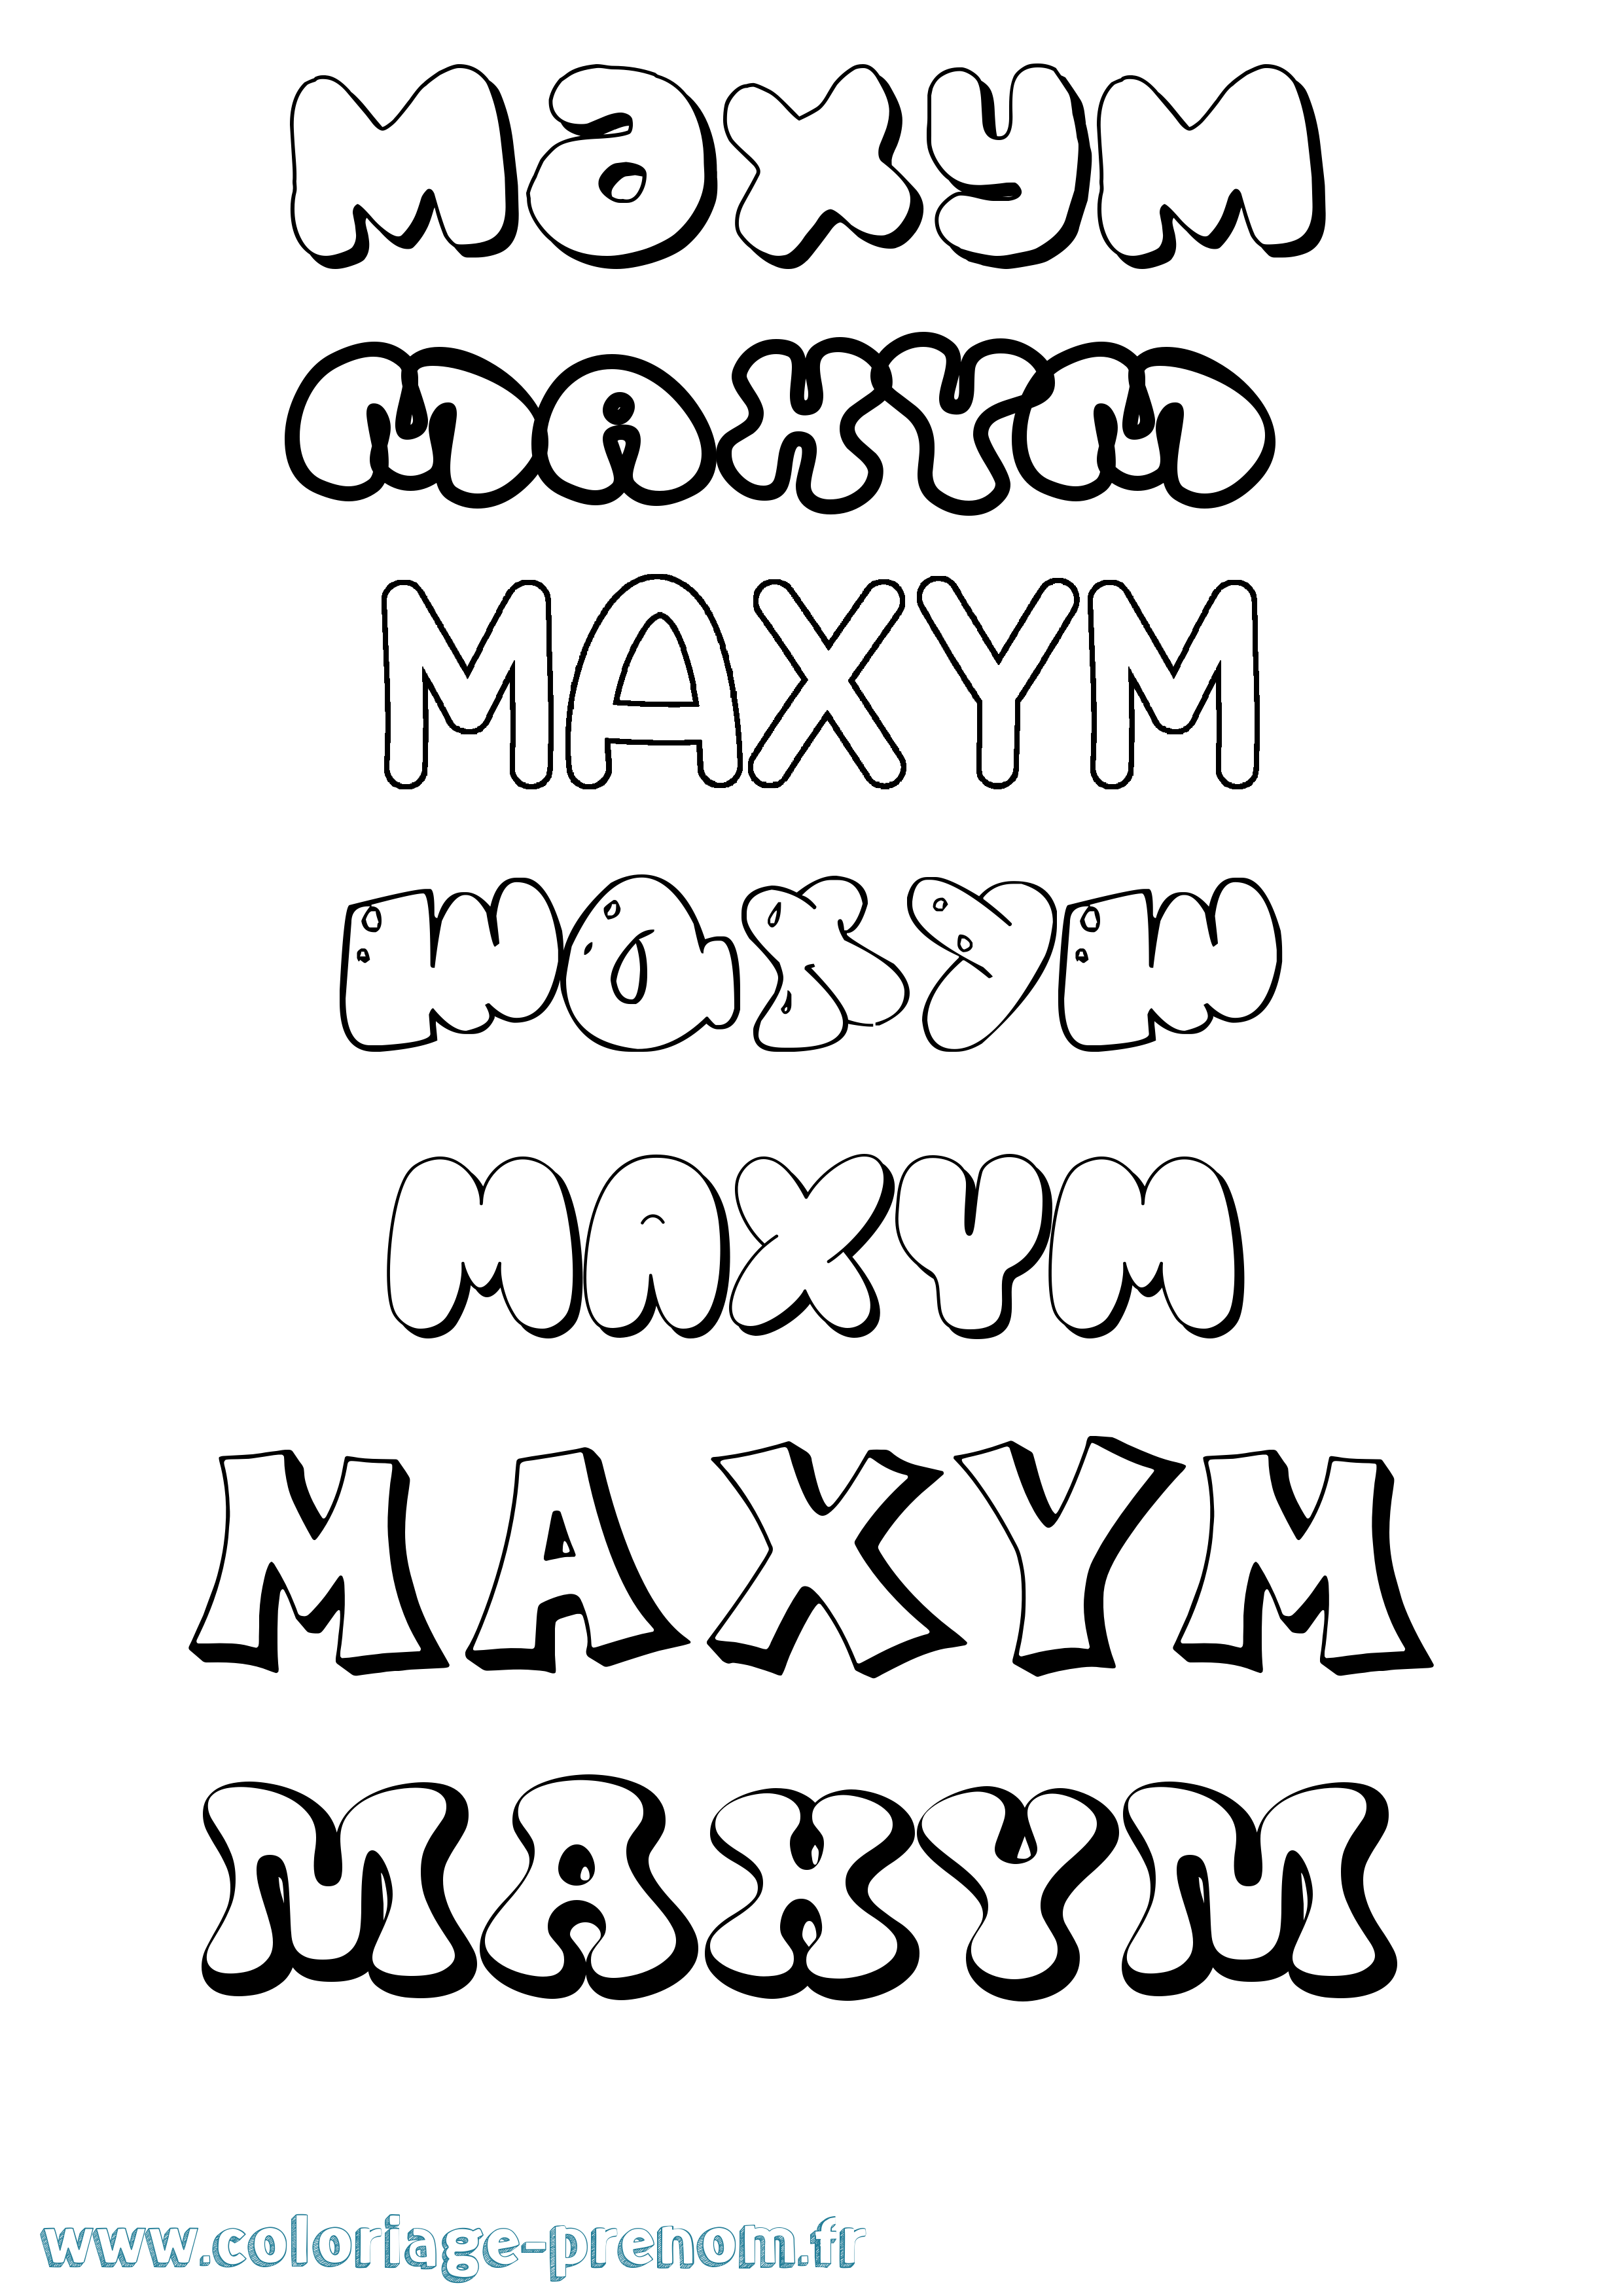 Coloriage prénom Maxym Bubble